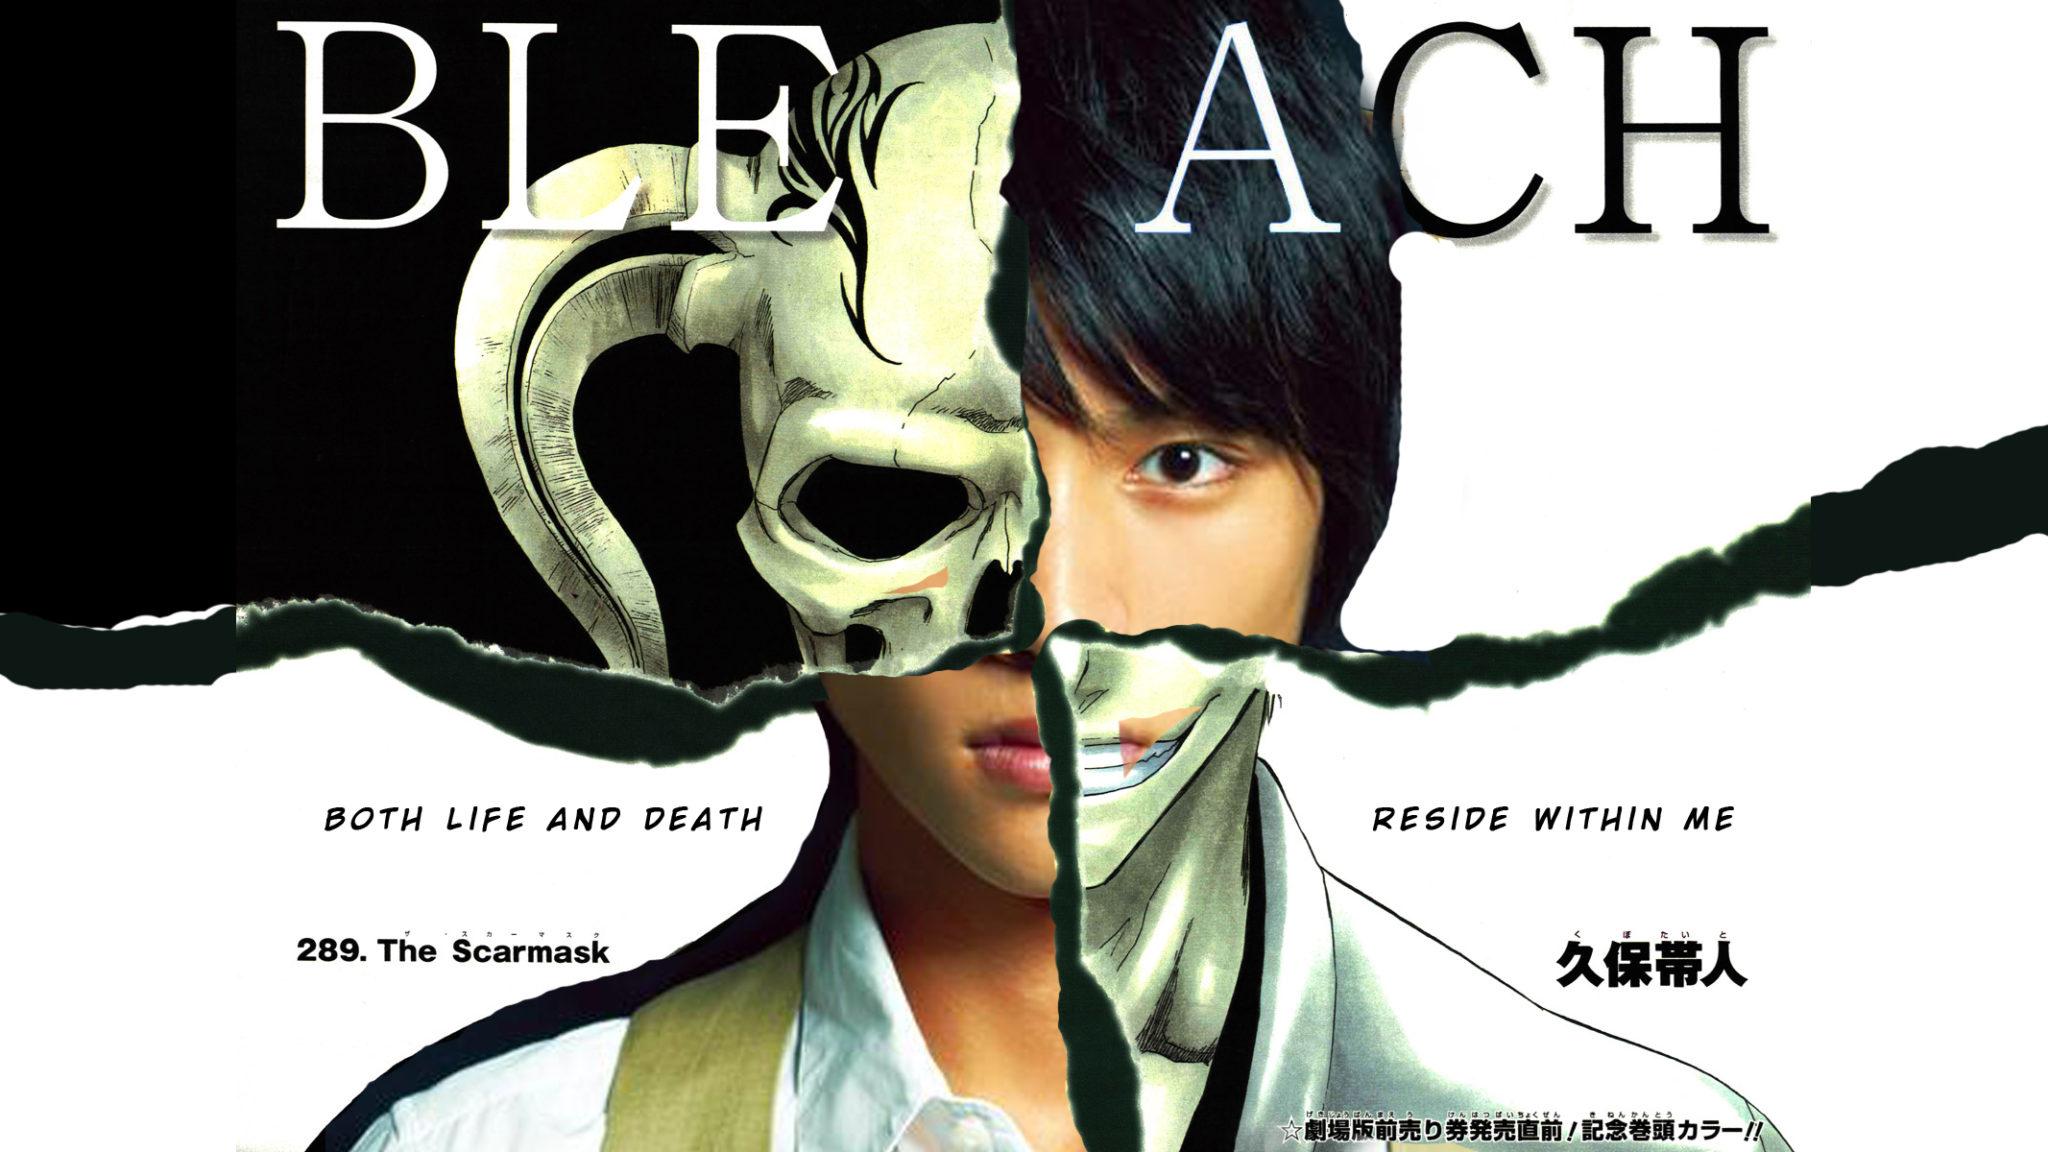 Bleach Live Action Poster - HD Wallpaper 